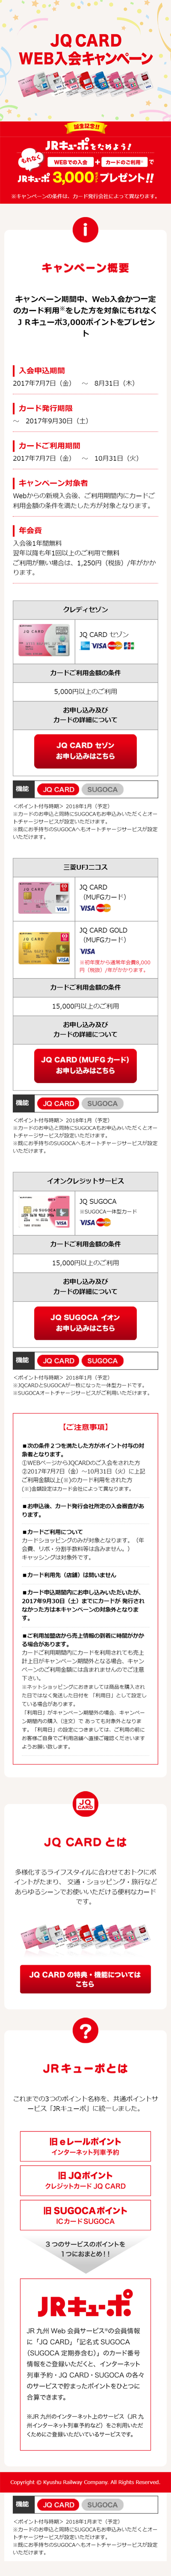 JQ CARD WEB入会キャンペーン_sp_1